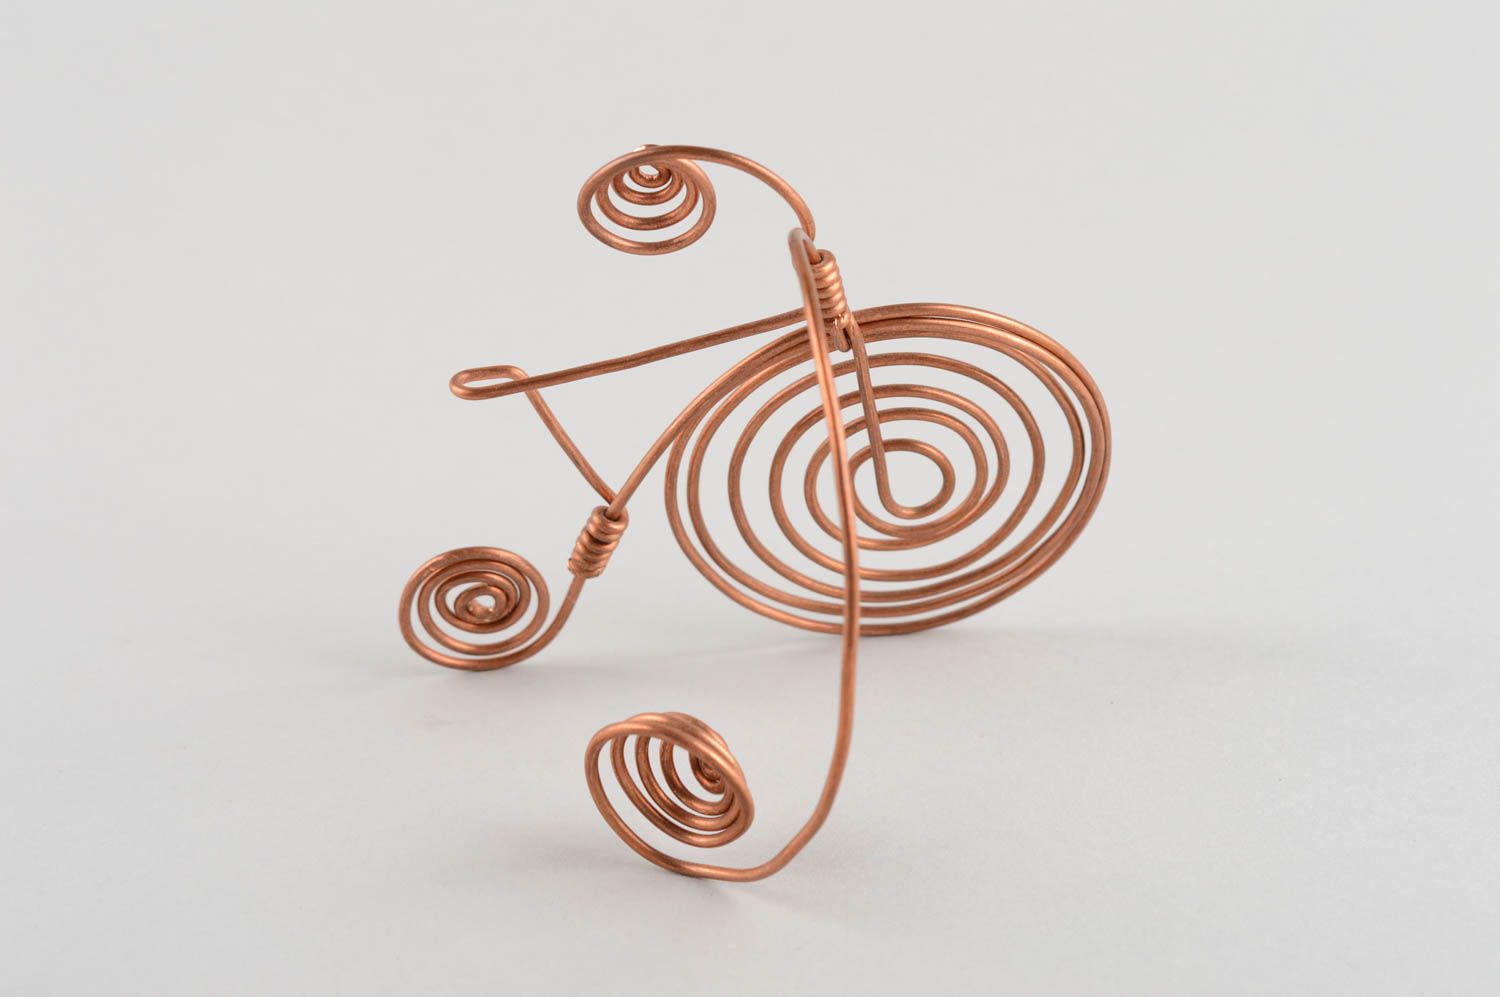 Handmade copper statue decorative copper wire figurine home decor ideas photo 3